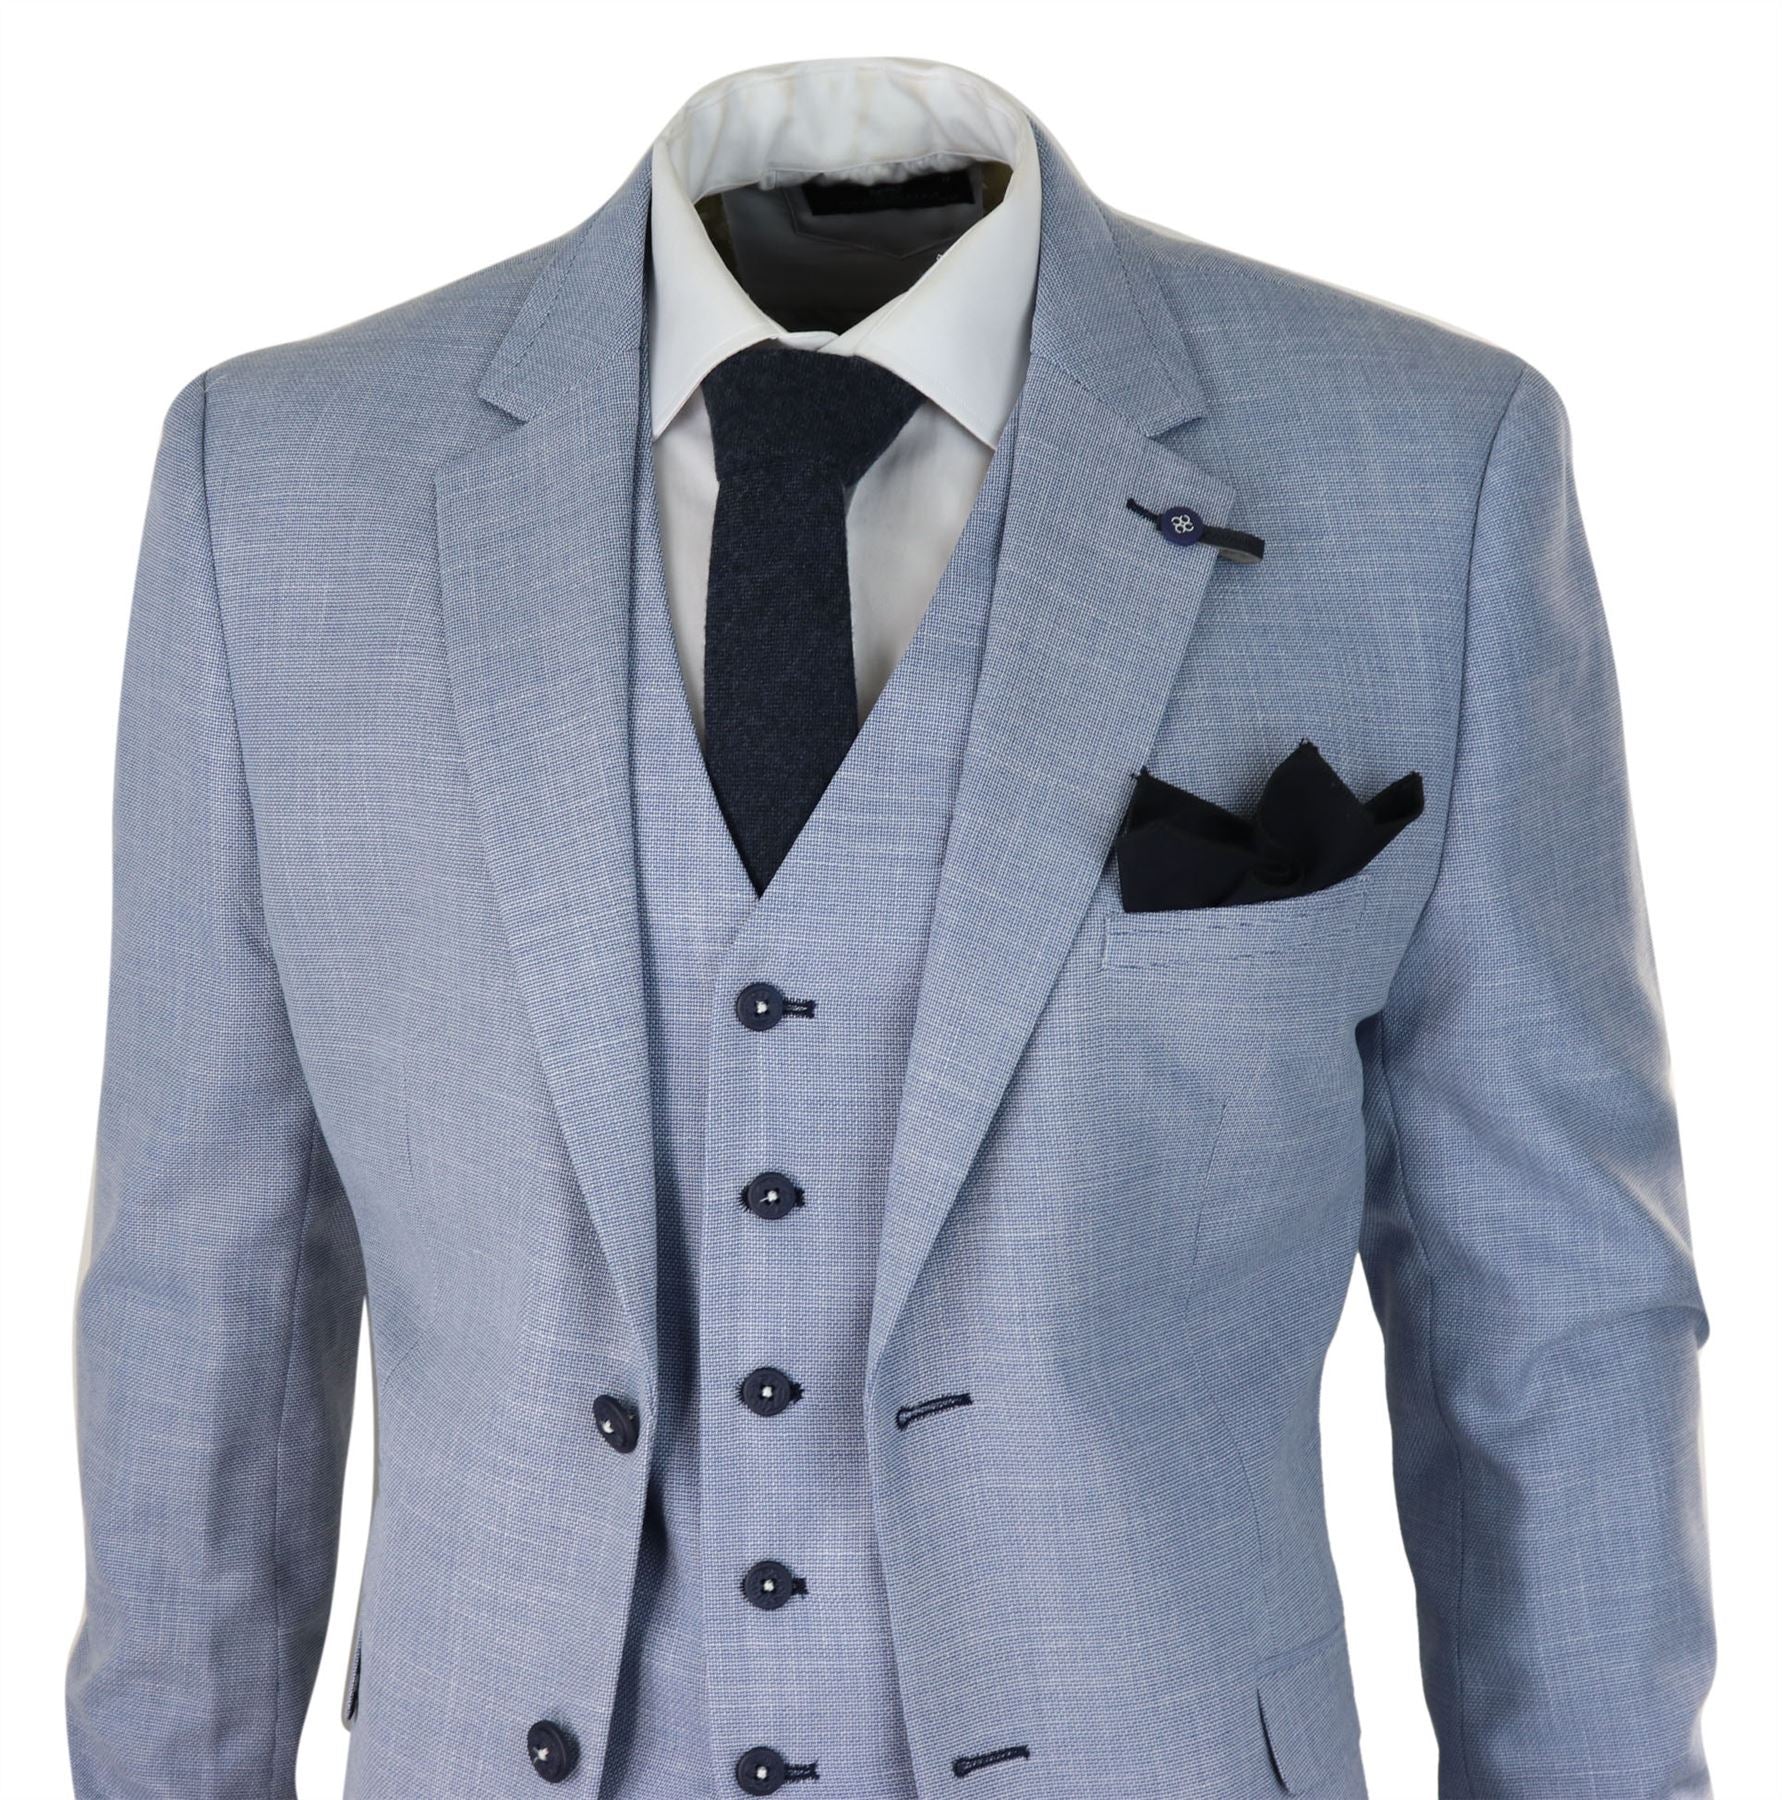 Mens 3 Piece Suit Light Blue Summer Linen Tailored Fit Wedding